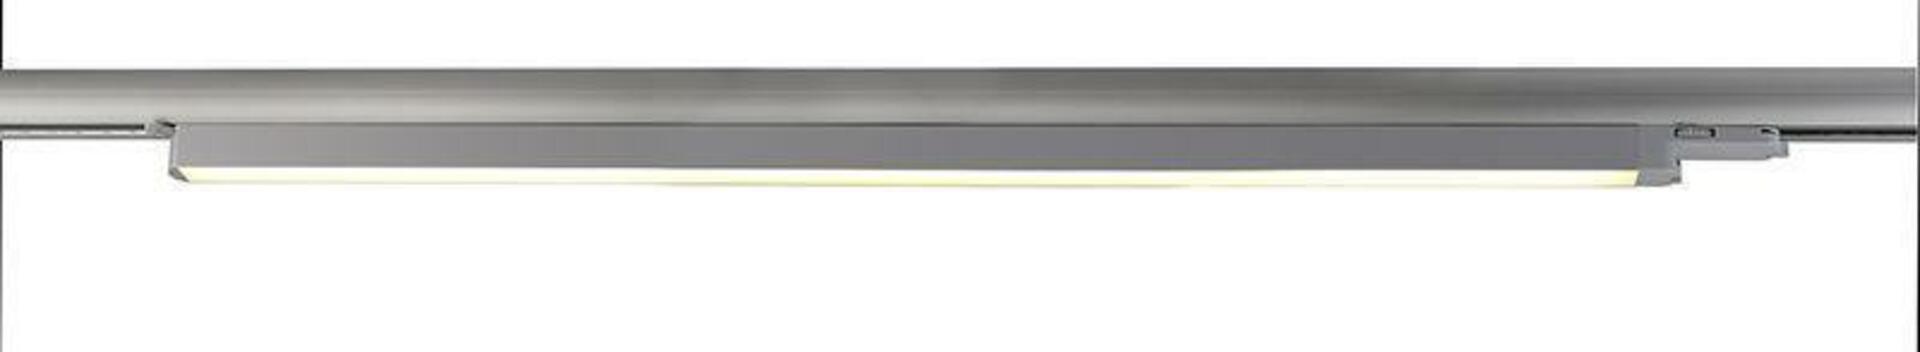 Light Impressions Deko-Light kolejnicový systém 3-fázový 230V lineární 60 110-240V AC/50-60Hz 20,10 W 3000 K stříbrná 687 mm  707048